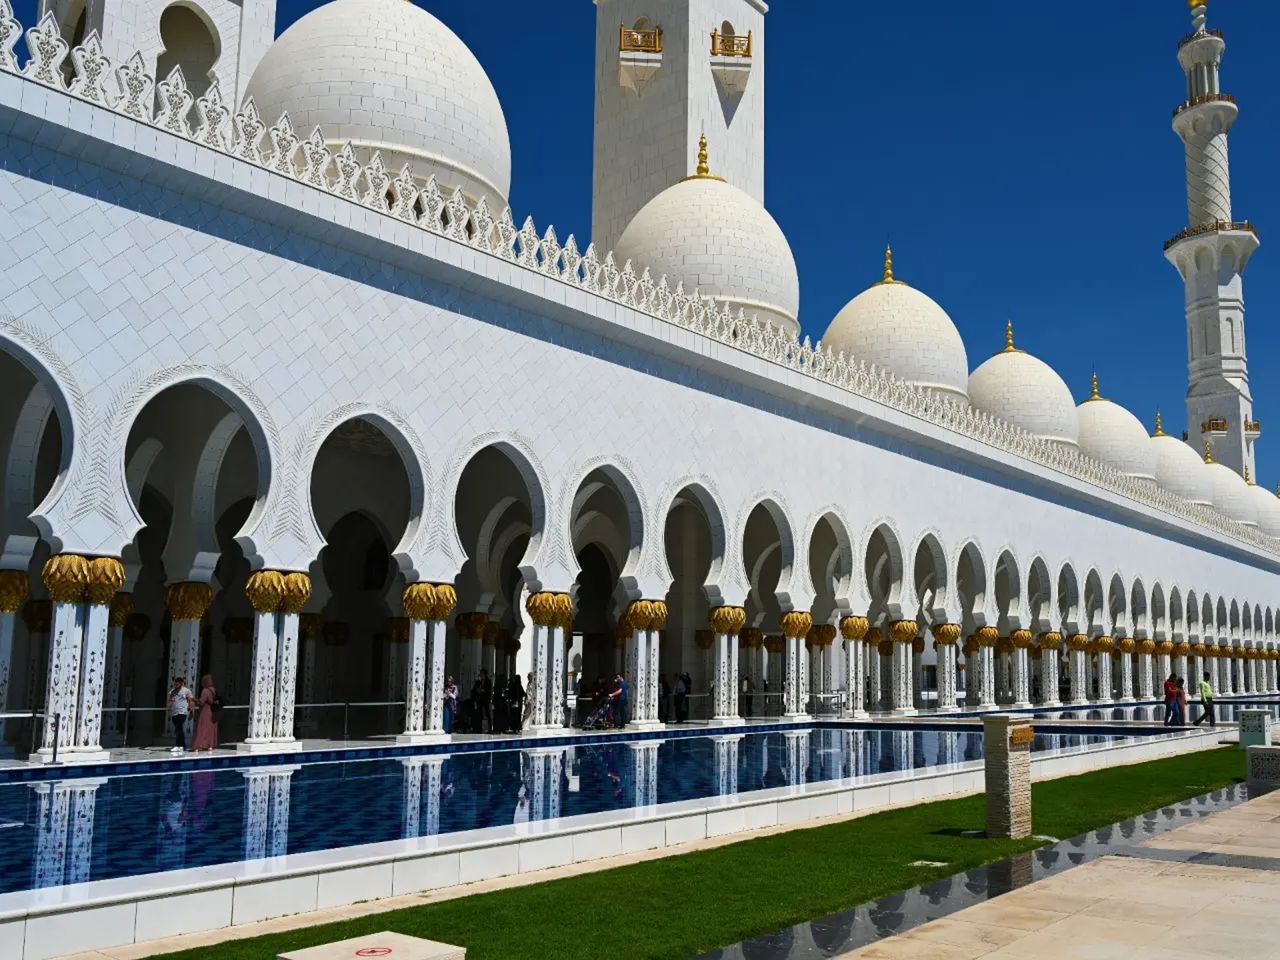 Экскурсия в мечеть Шейха Зайда | Цена 270$, отзывы, описание экскурсии